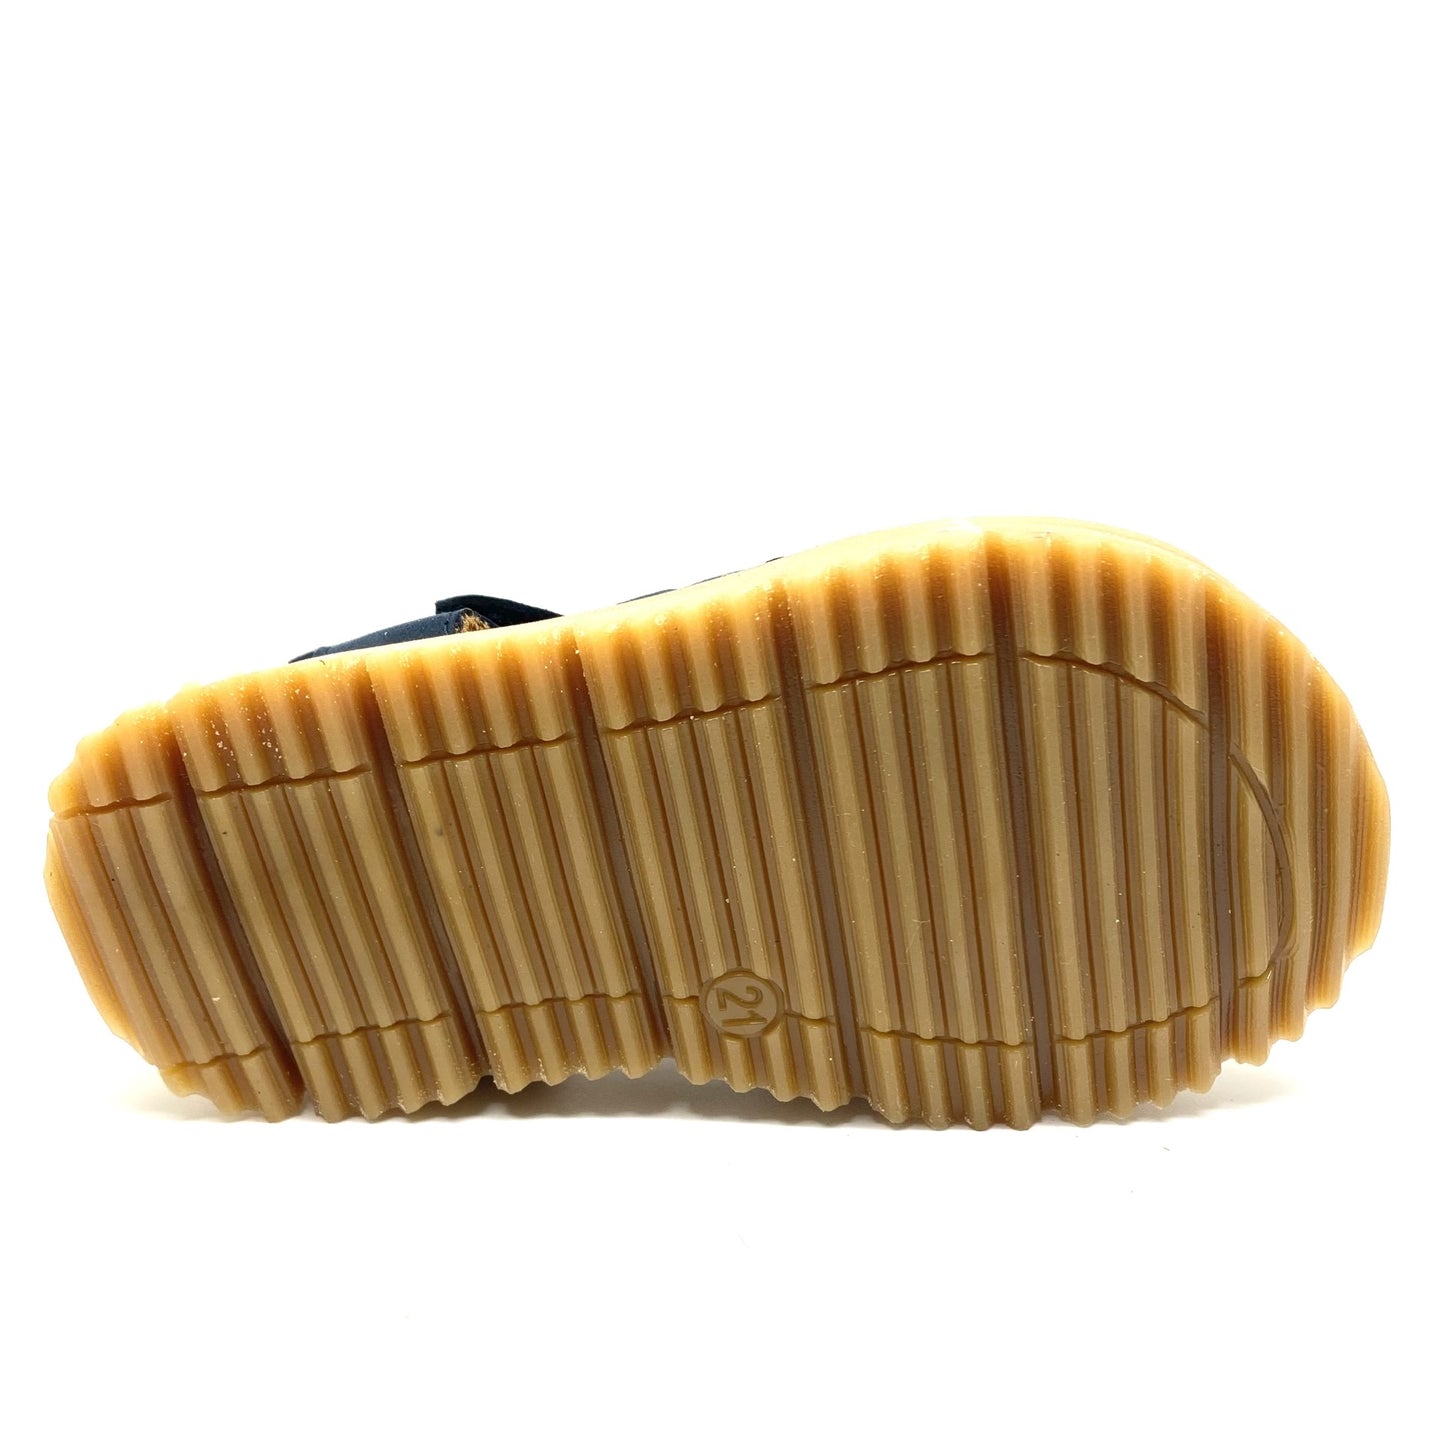 Zecchino D'oro sandaal met gesloten tip.